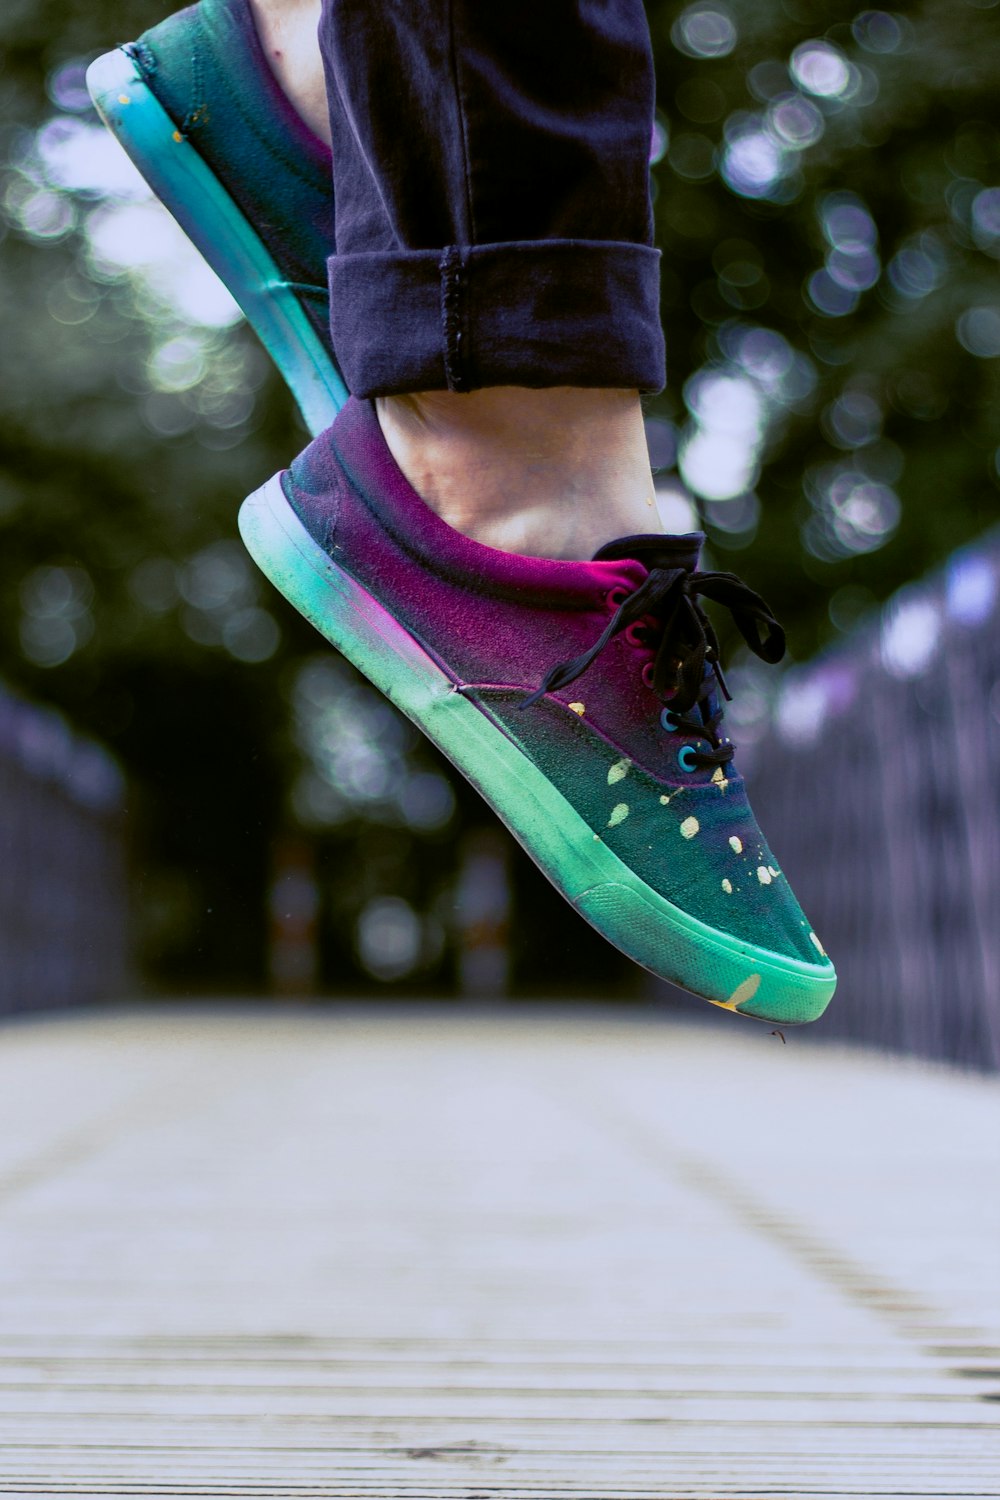 Fotografía de enfoque selectivo de una persona que usa zapatillas multicolores mientras salta